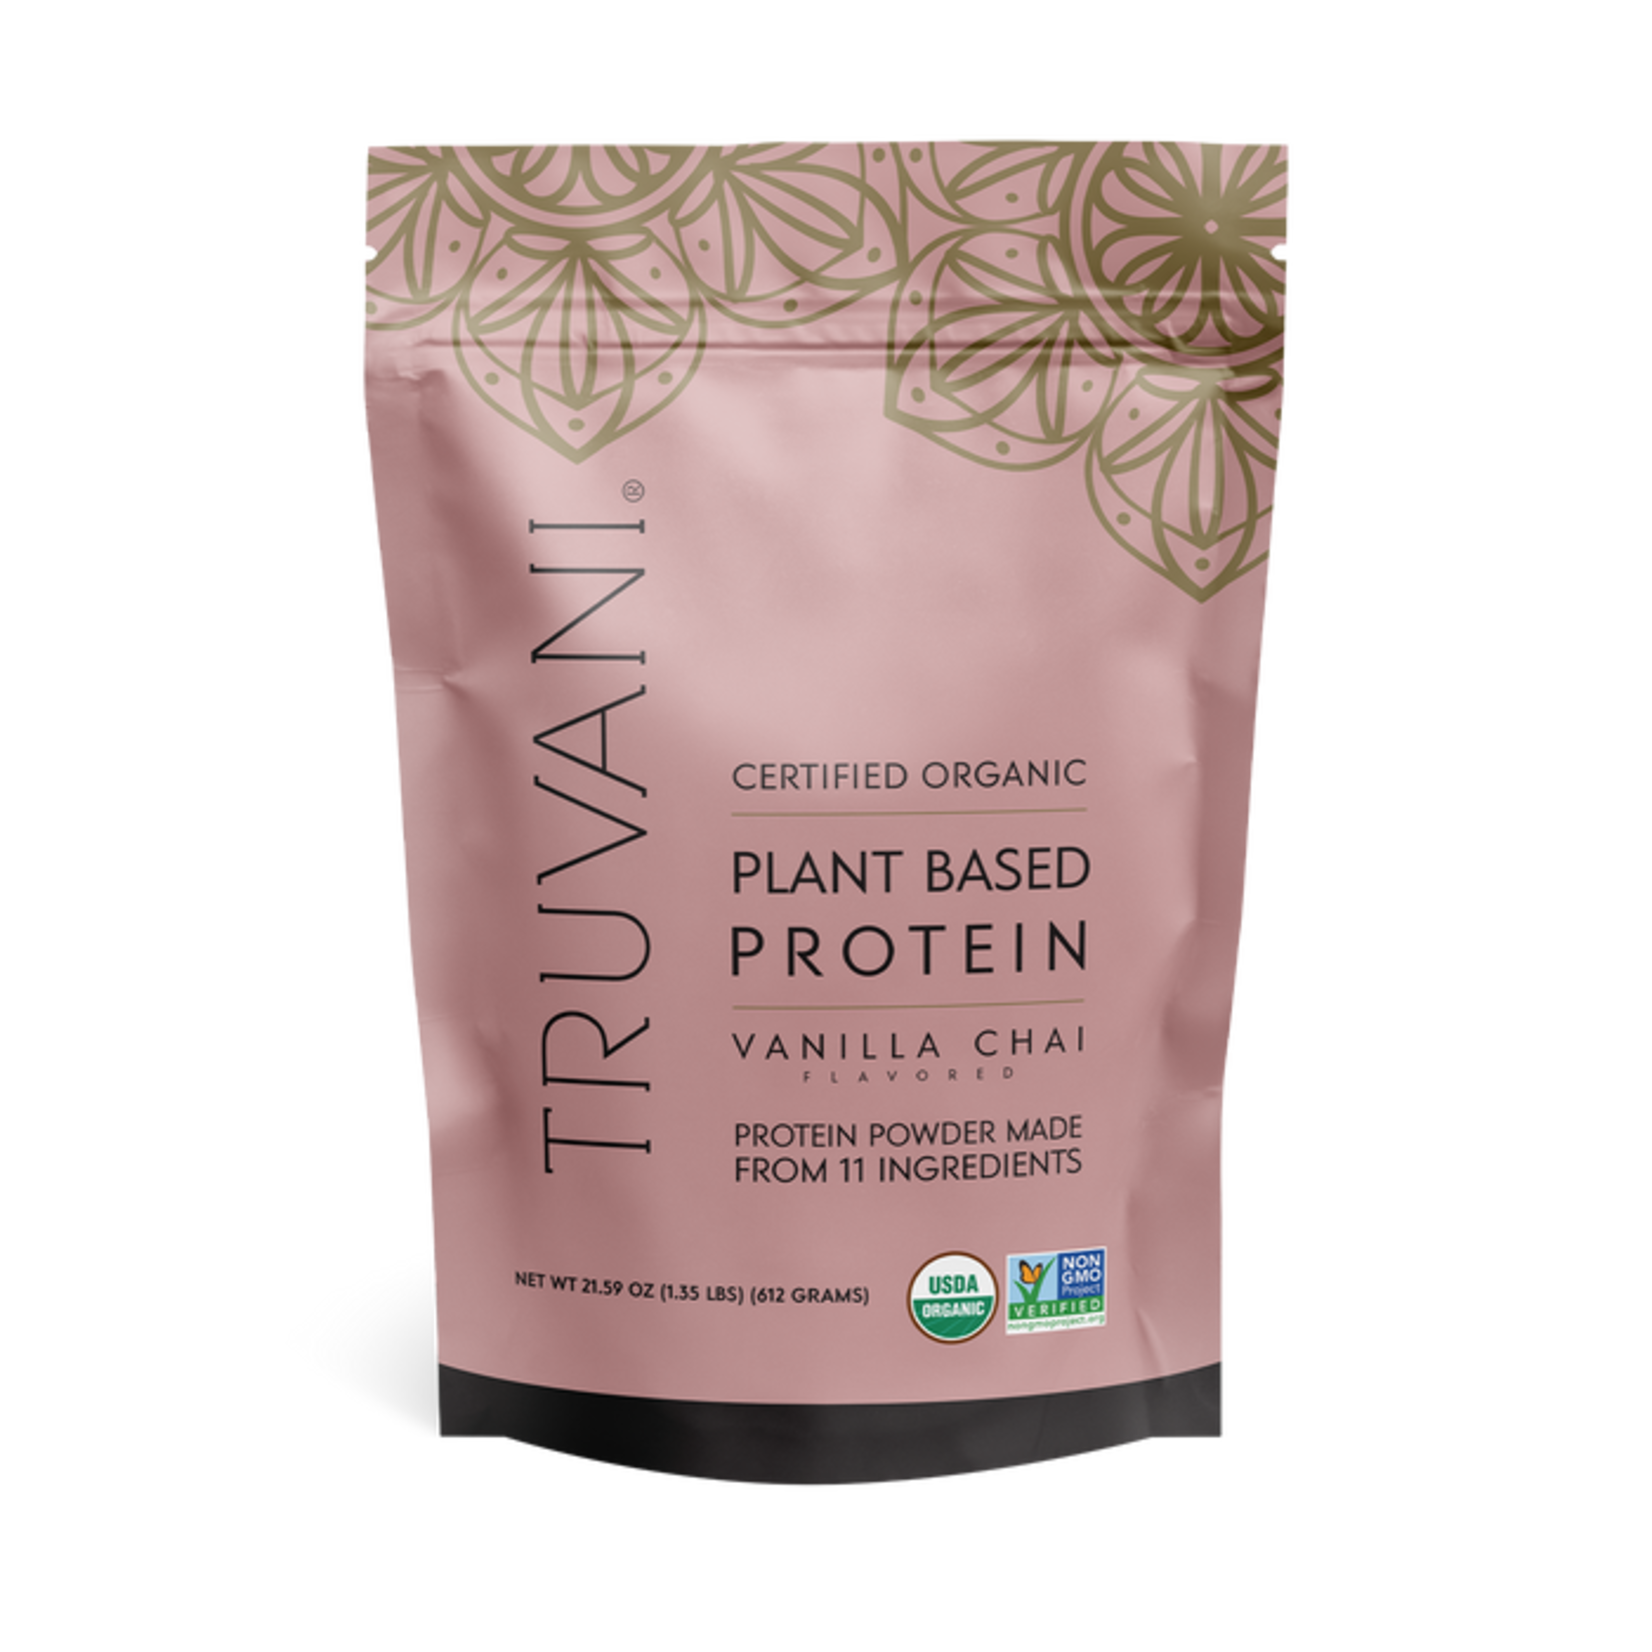 Truvani Truvani - Protein Vanilla Chai - 20 Servings